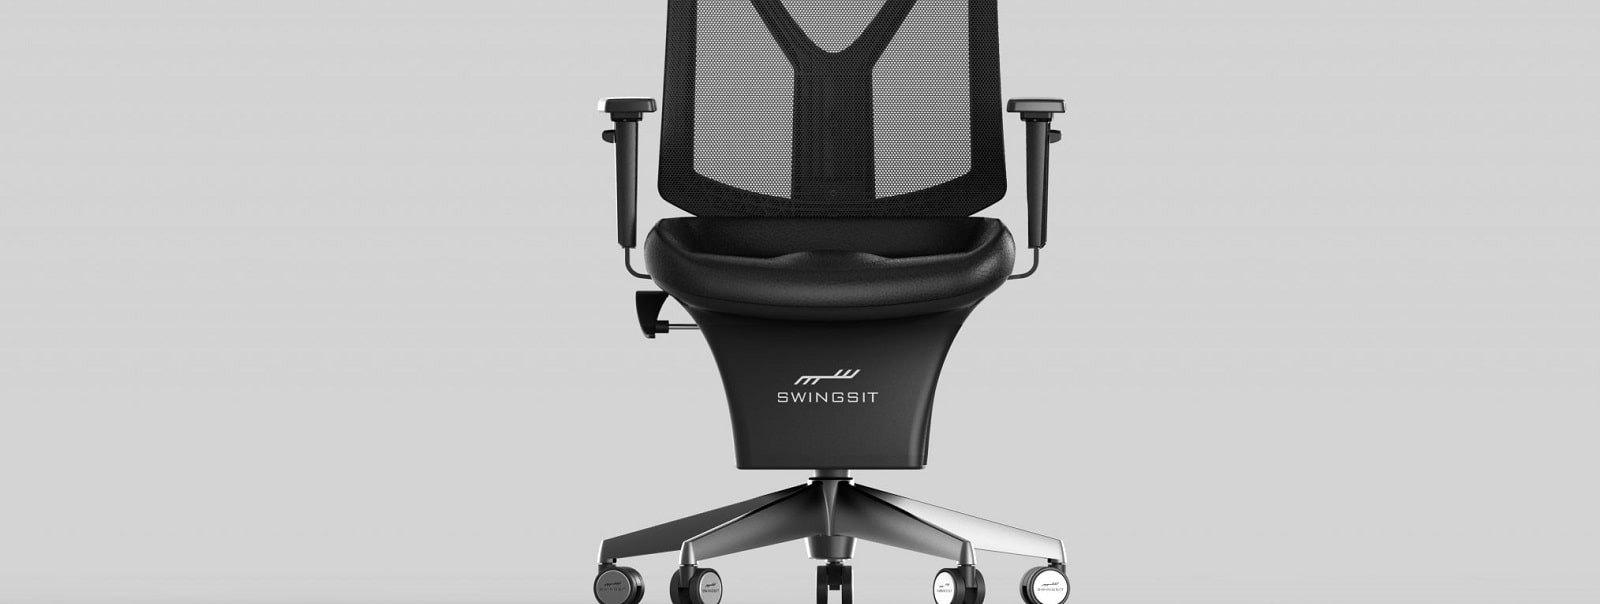 Swingseat - офісний стілець с хитанням